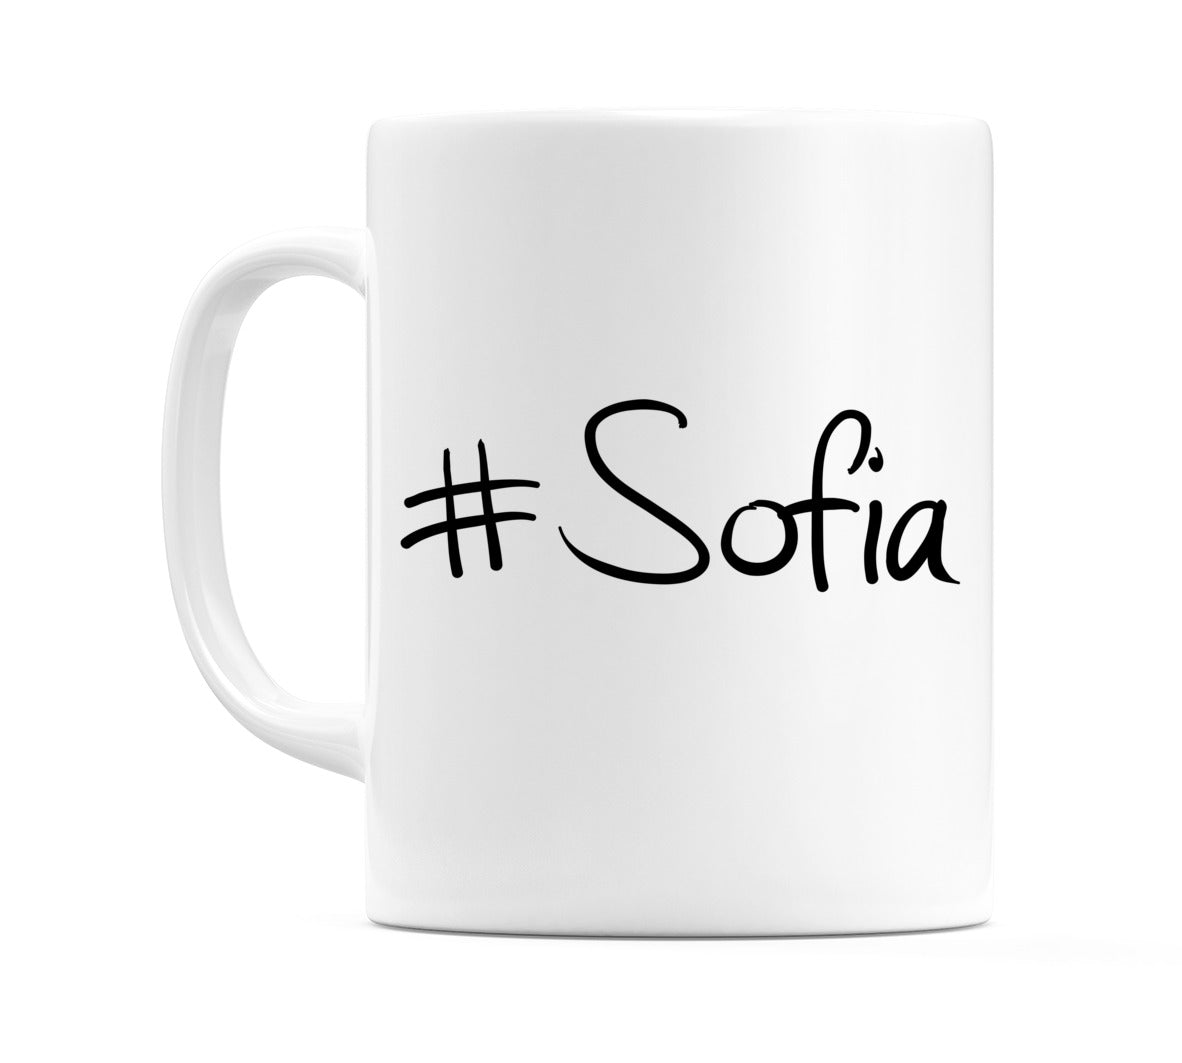 #Sofia Mug